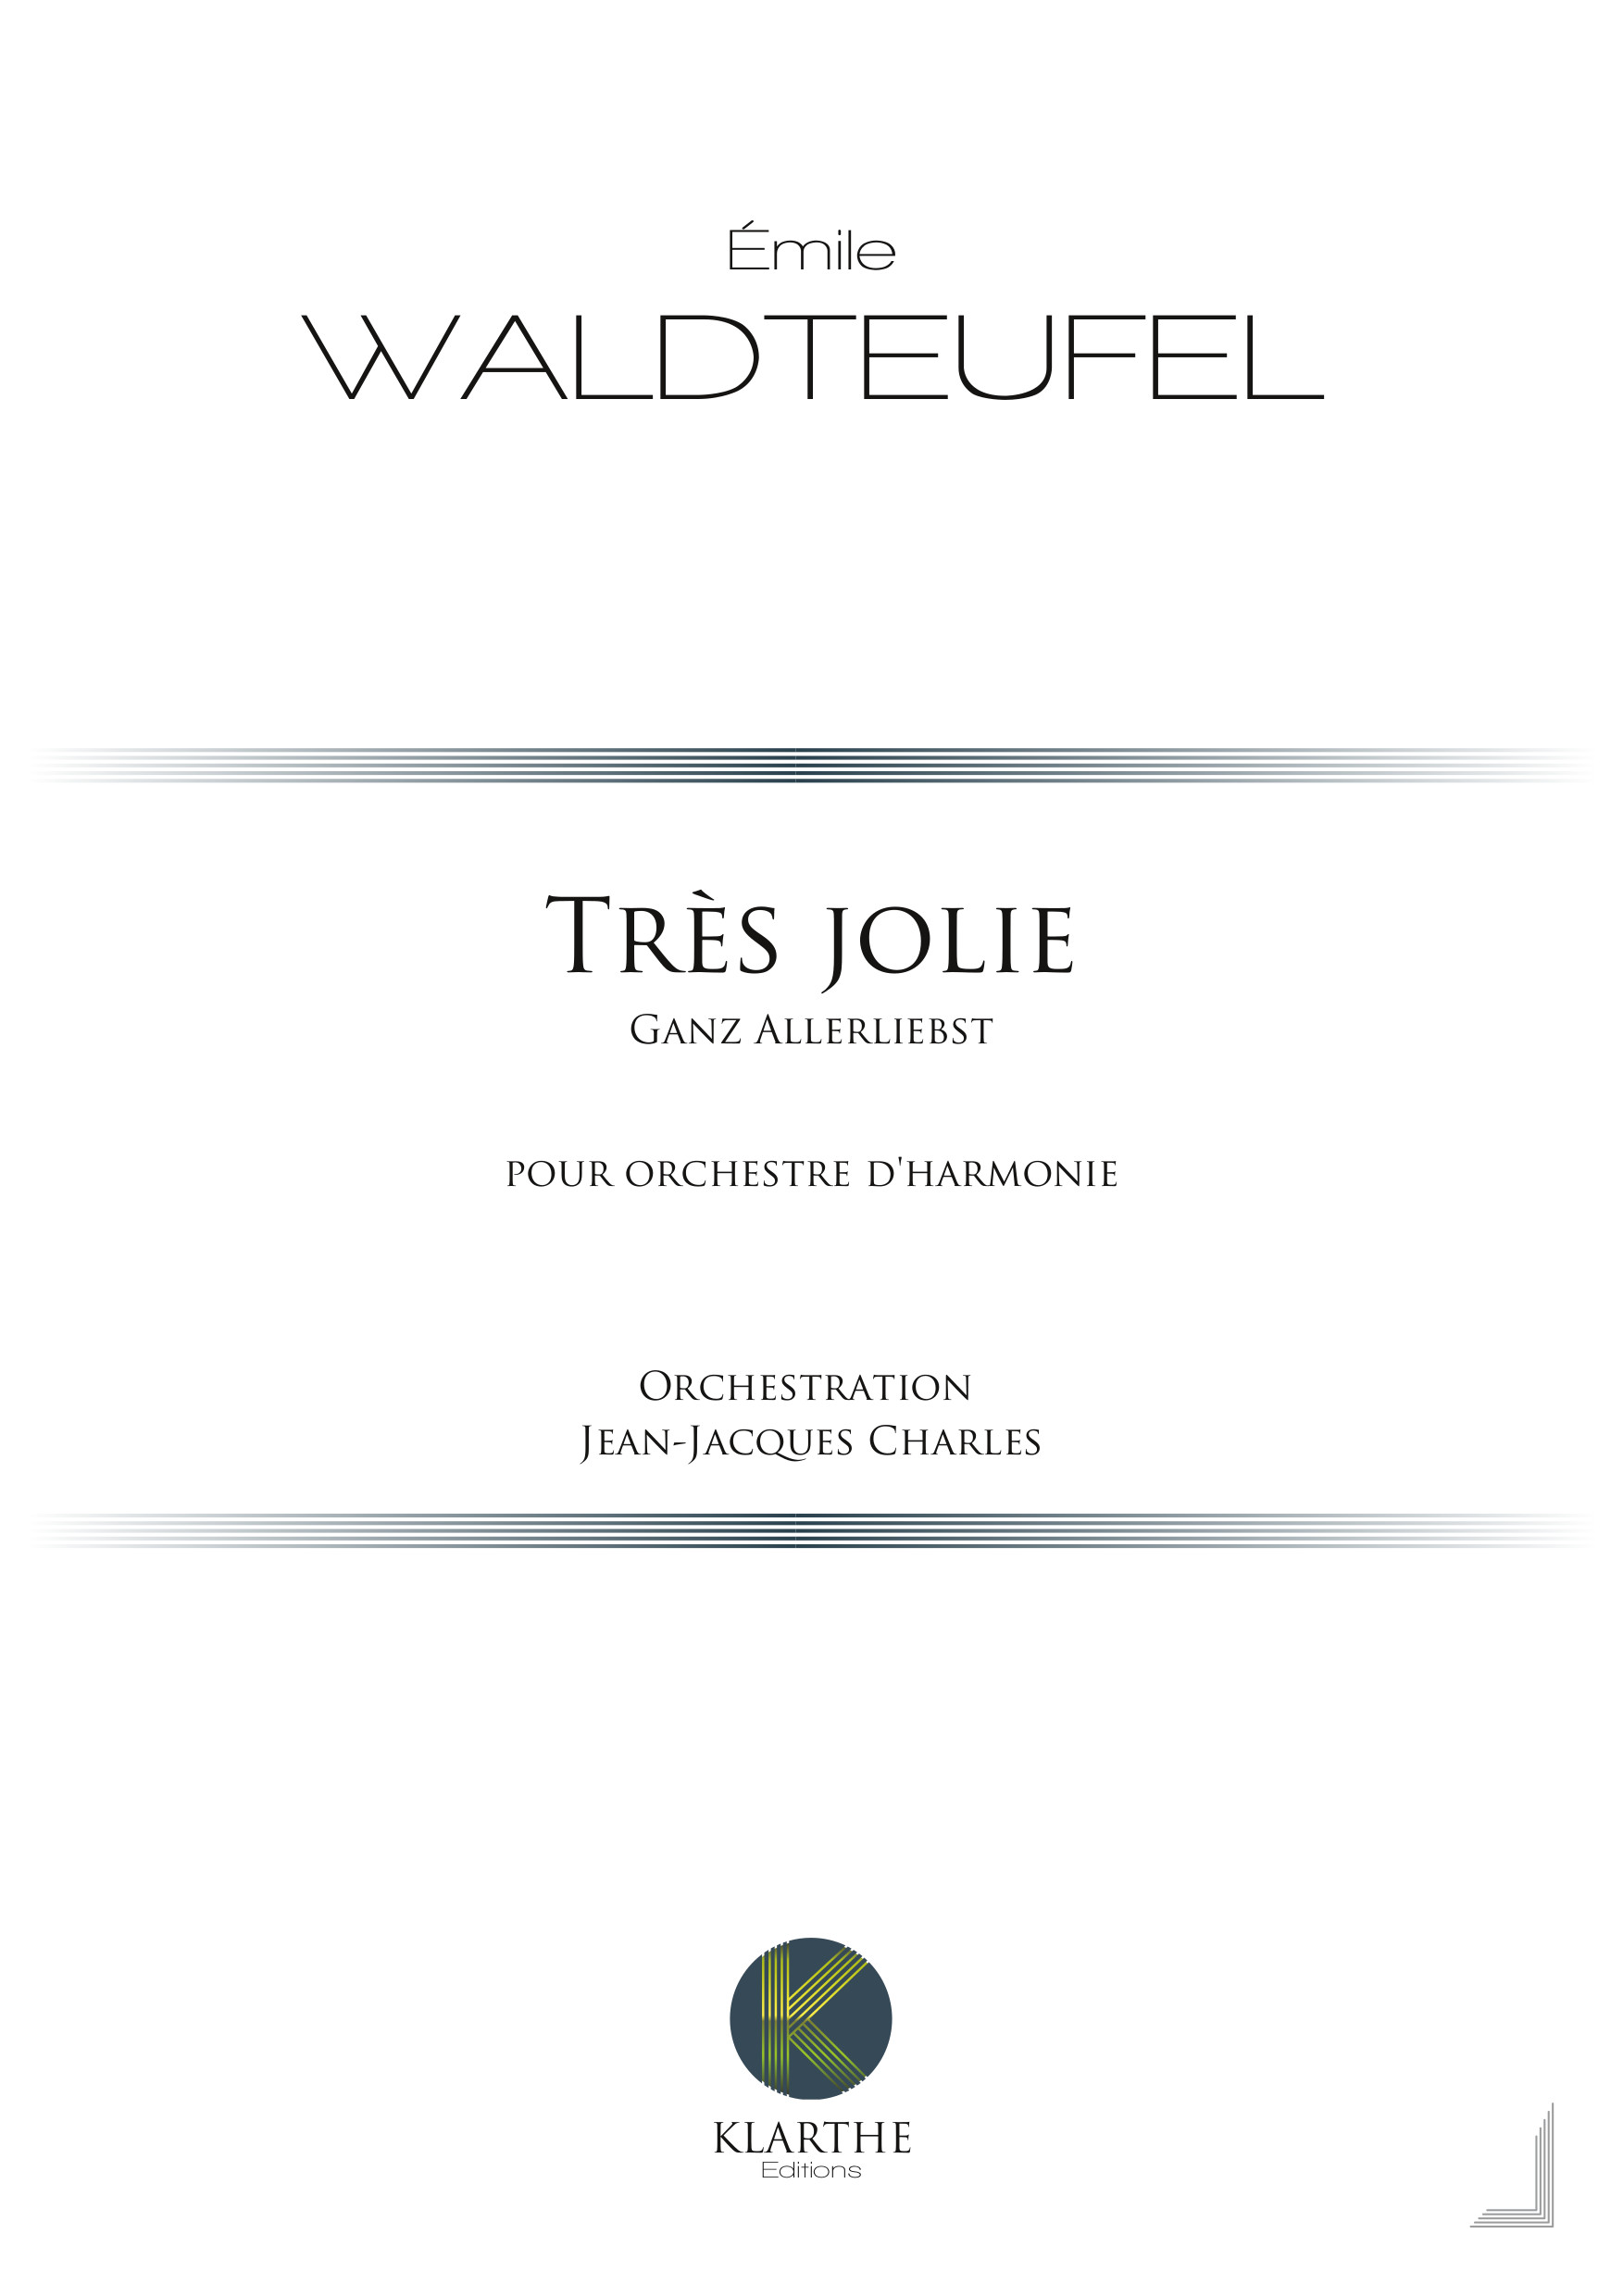 Très jolie, opus 159 (WALDTEUFEL EMILE)